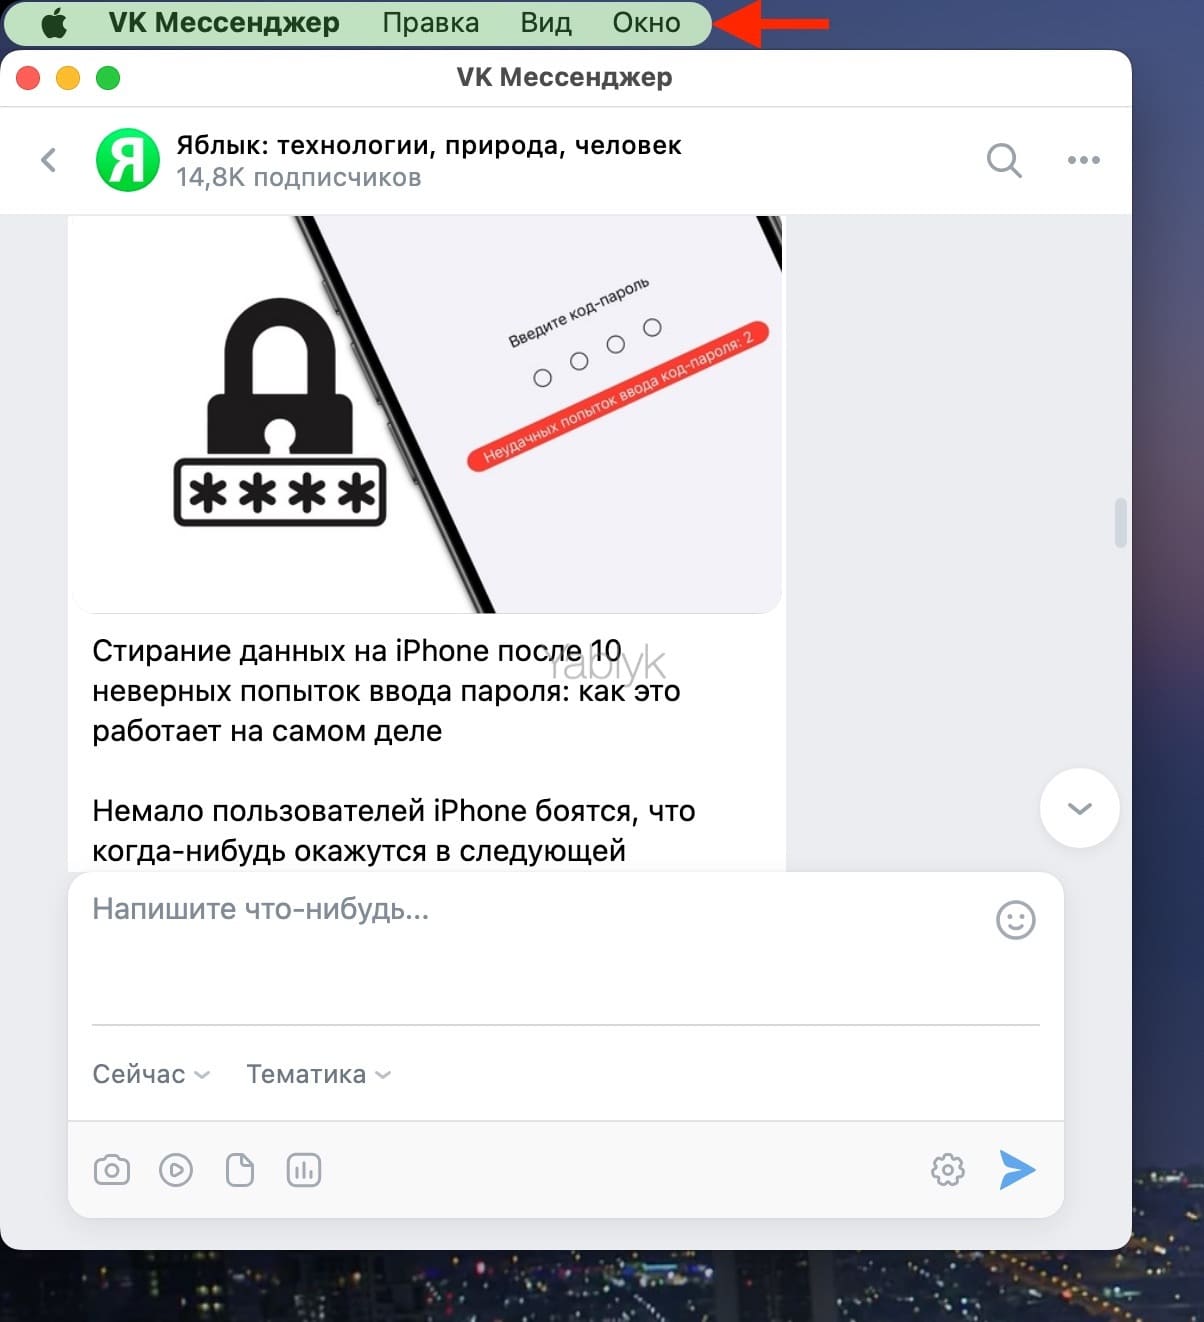 VK Messenger: Программа Вконтакте (ВК) для компьютера Windows и Mac. Обзор